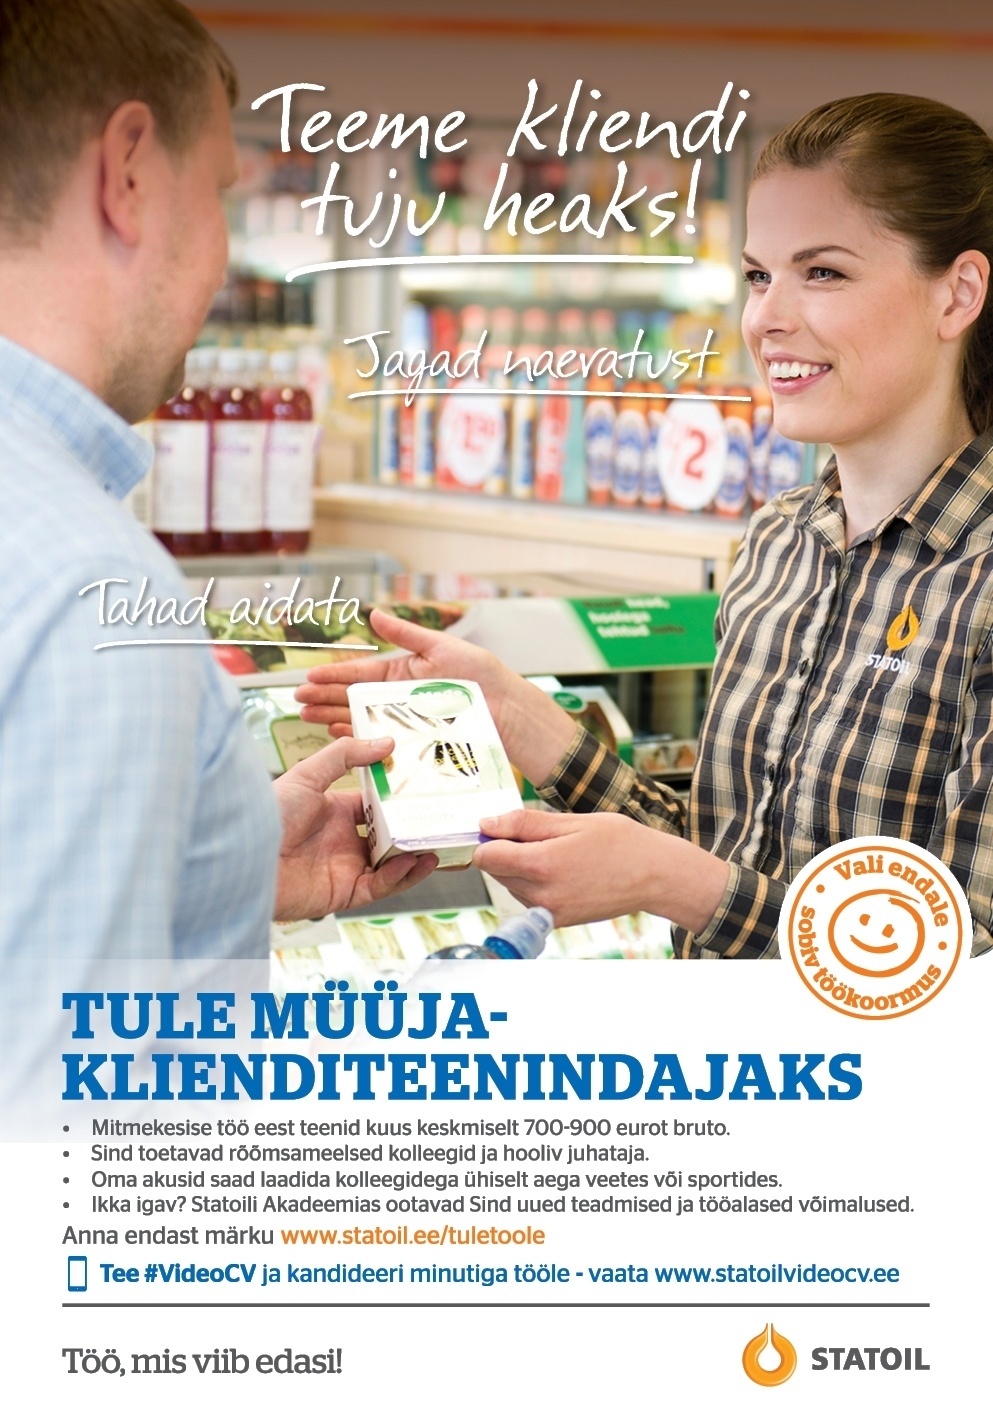 Circle K Eesti AS Müüja-klienditeenindaja Tartu Turu teenindusjaama